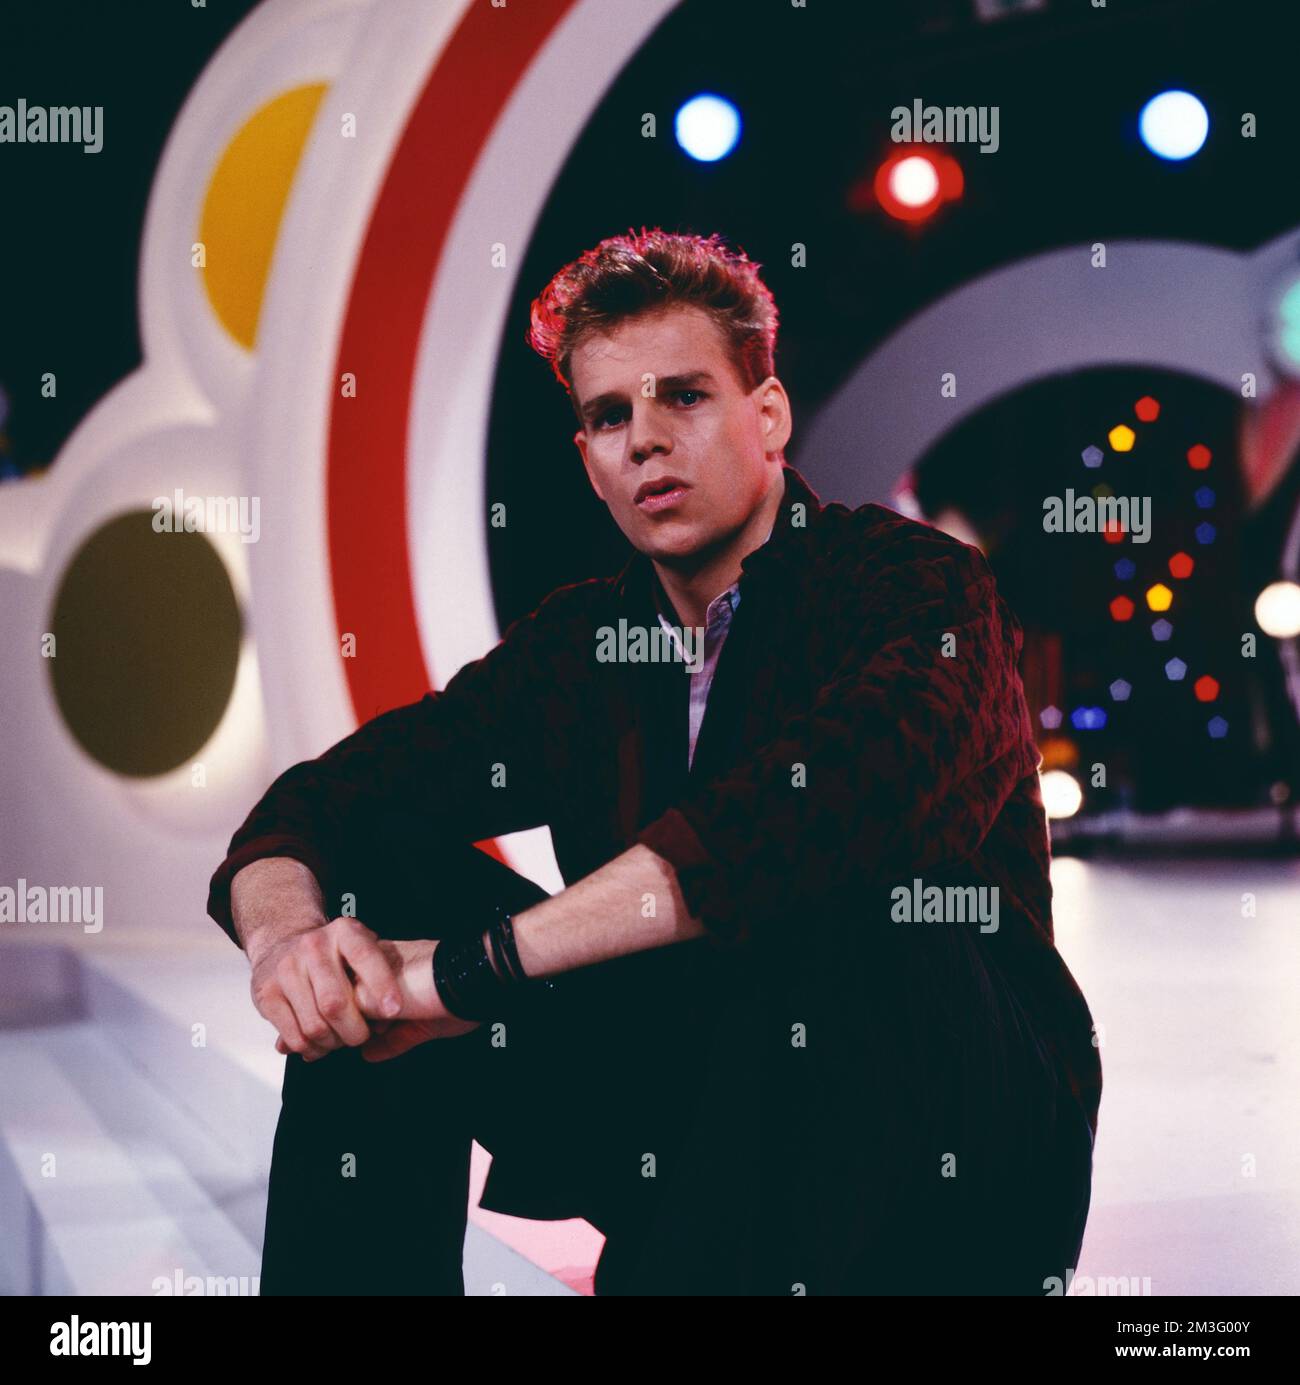 Die Spiebude, ARD Spielshow, Deutschland, 1984, mit Al Corley, amerikanischer Schauspieler und Sänger. Spielbude, TV music show, Germany, 1984, with Al Corley, American actor and singer. Stock Photo